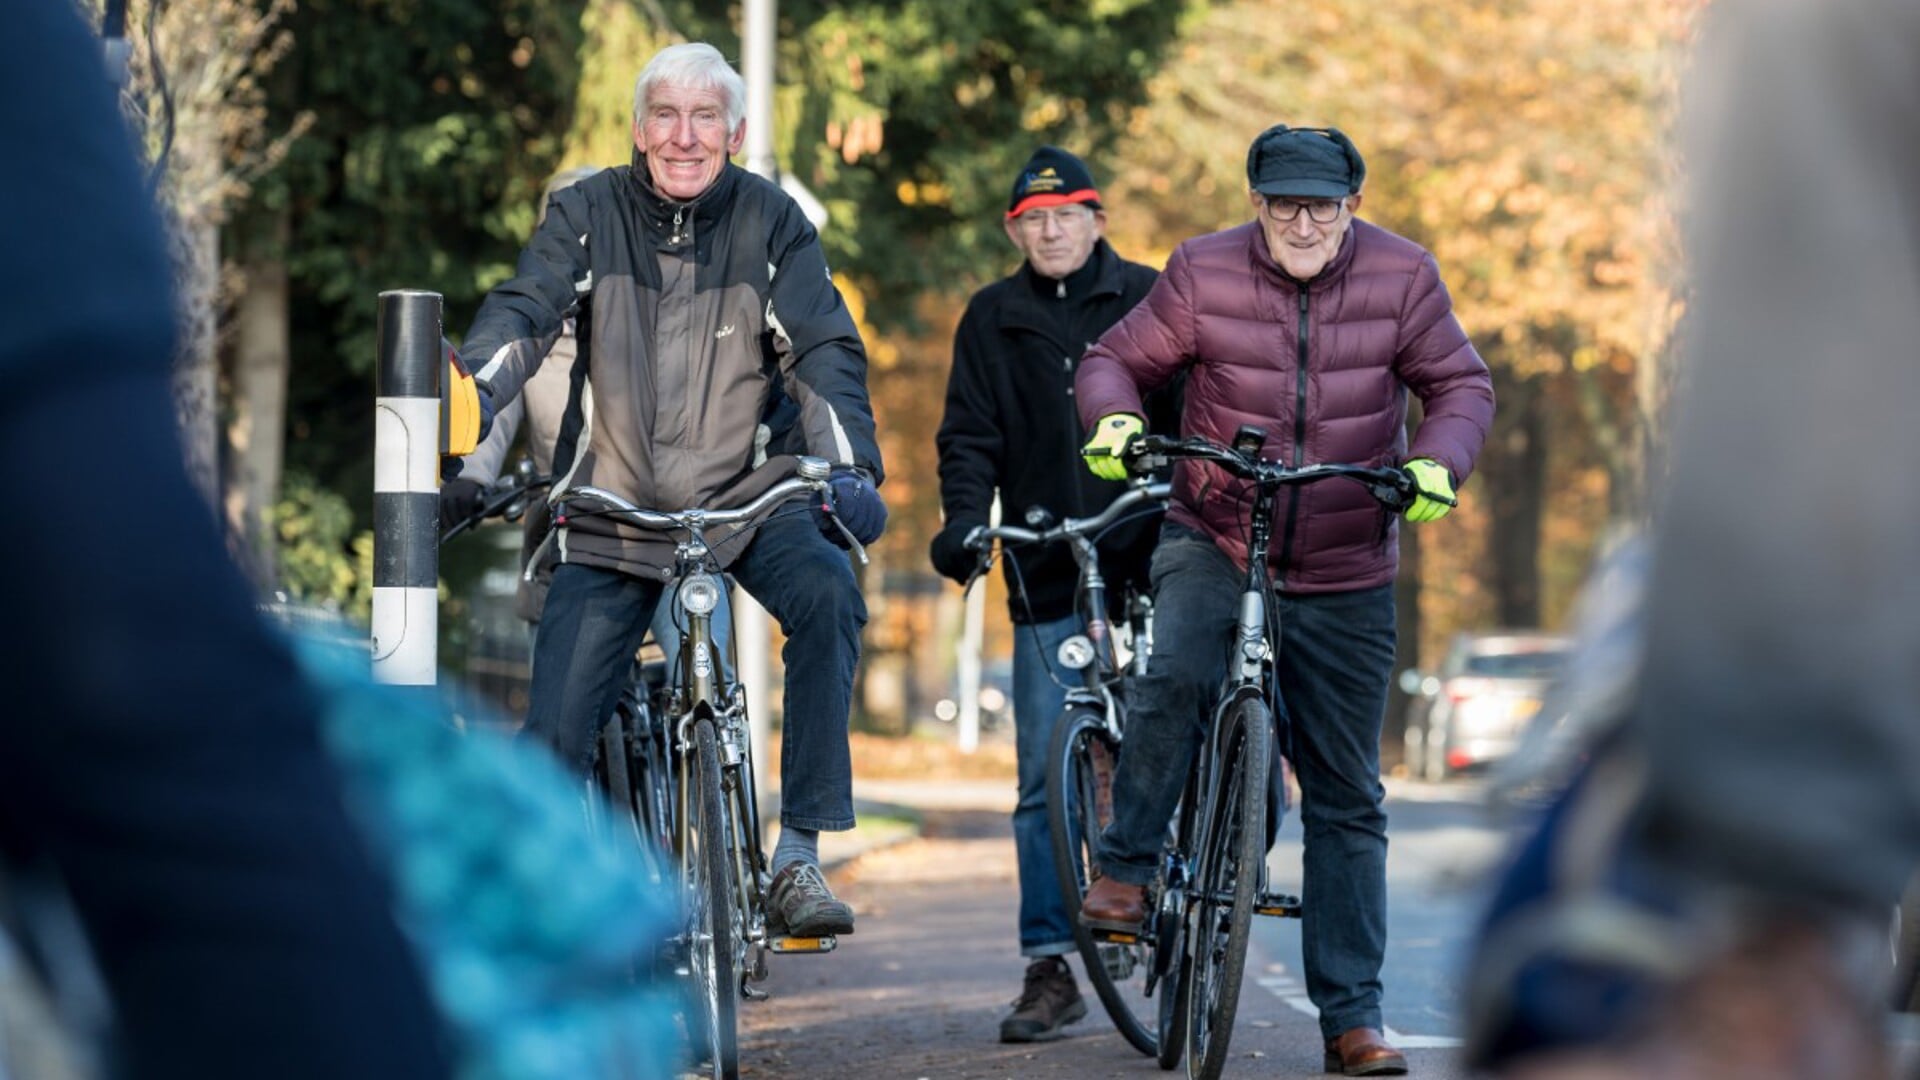 Speciaal voor zestigplussers organiseert Team Sportservice een fietsuitje in Stede Broec.